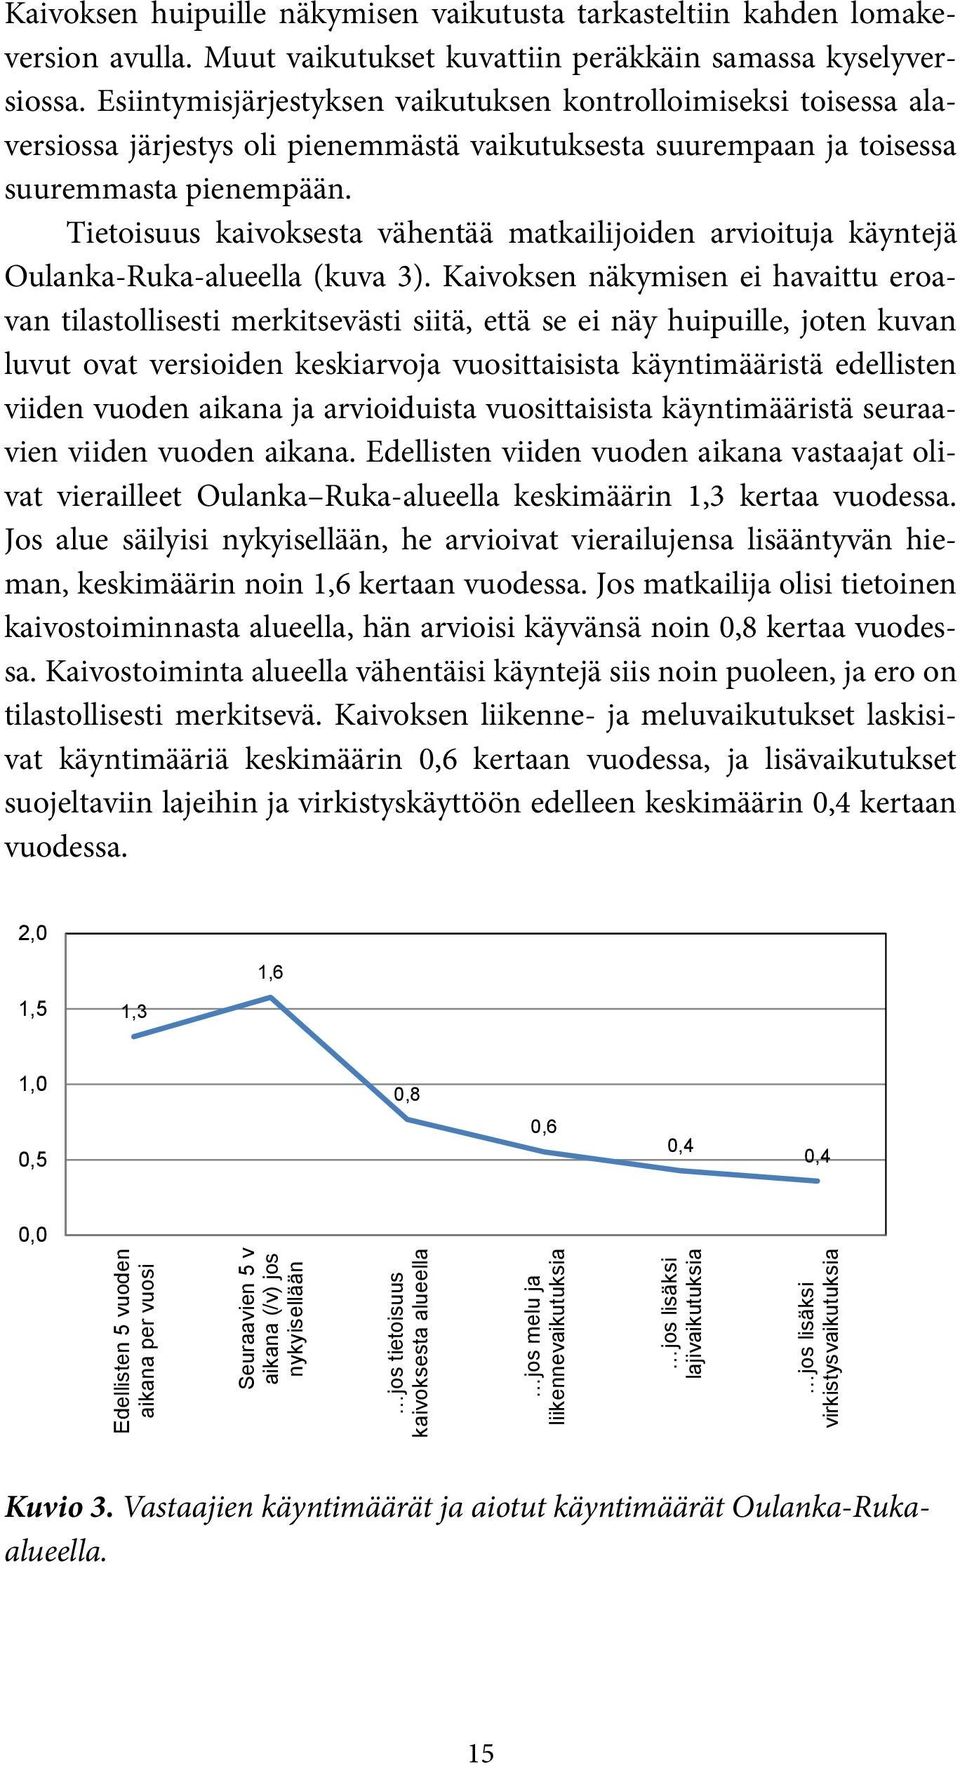 Tietoisuus kaivoksesta vähentää matkailijoiden arvioituja käyntejä Oulanka-Ruka-alueella (kuva 3).